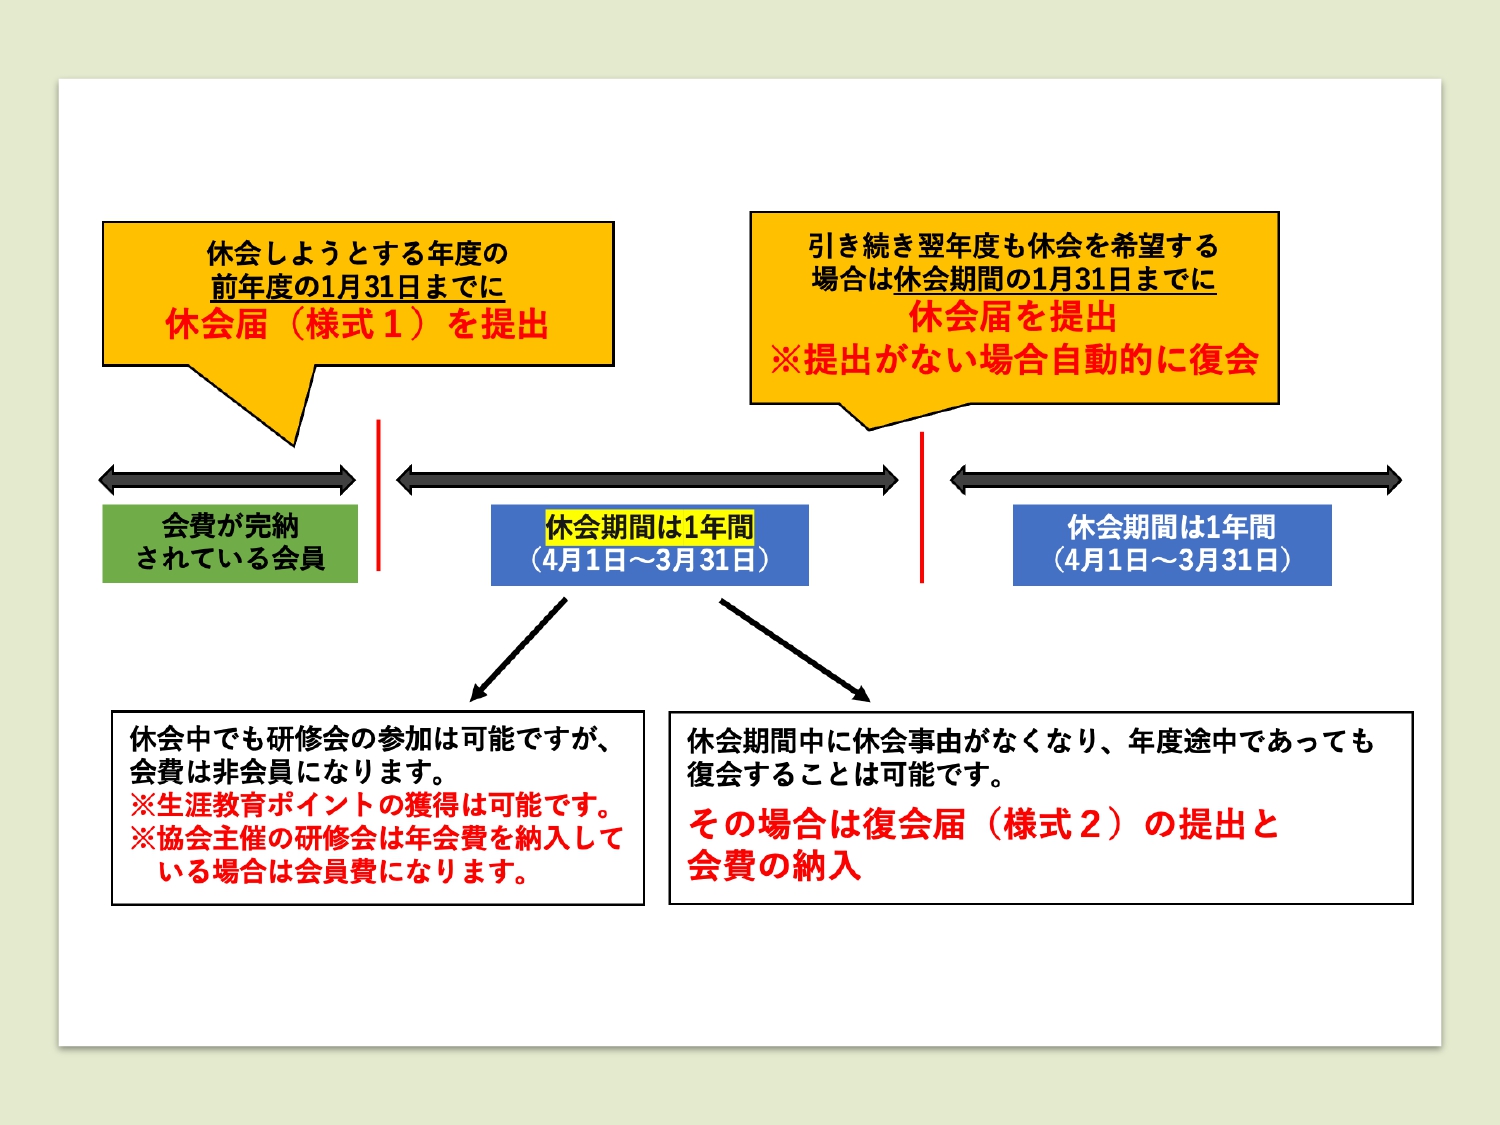 島根県作業療法士会-休会制度の概要図